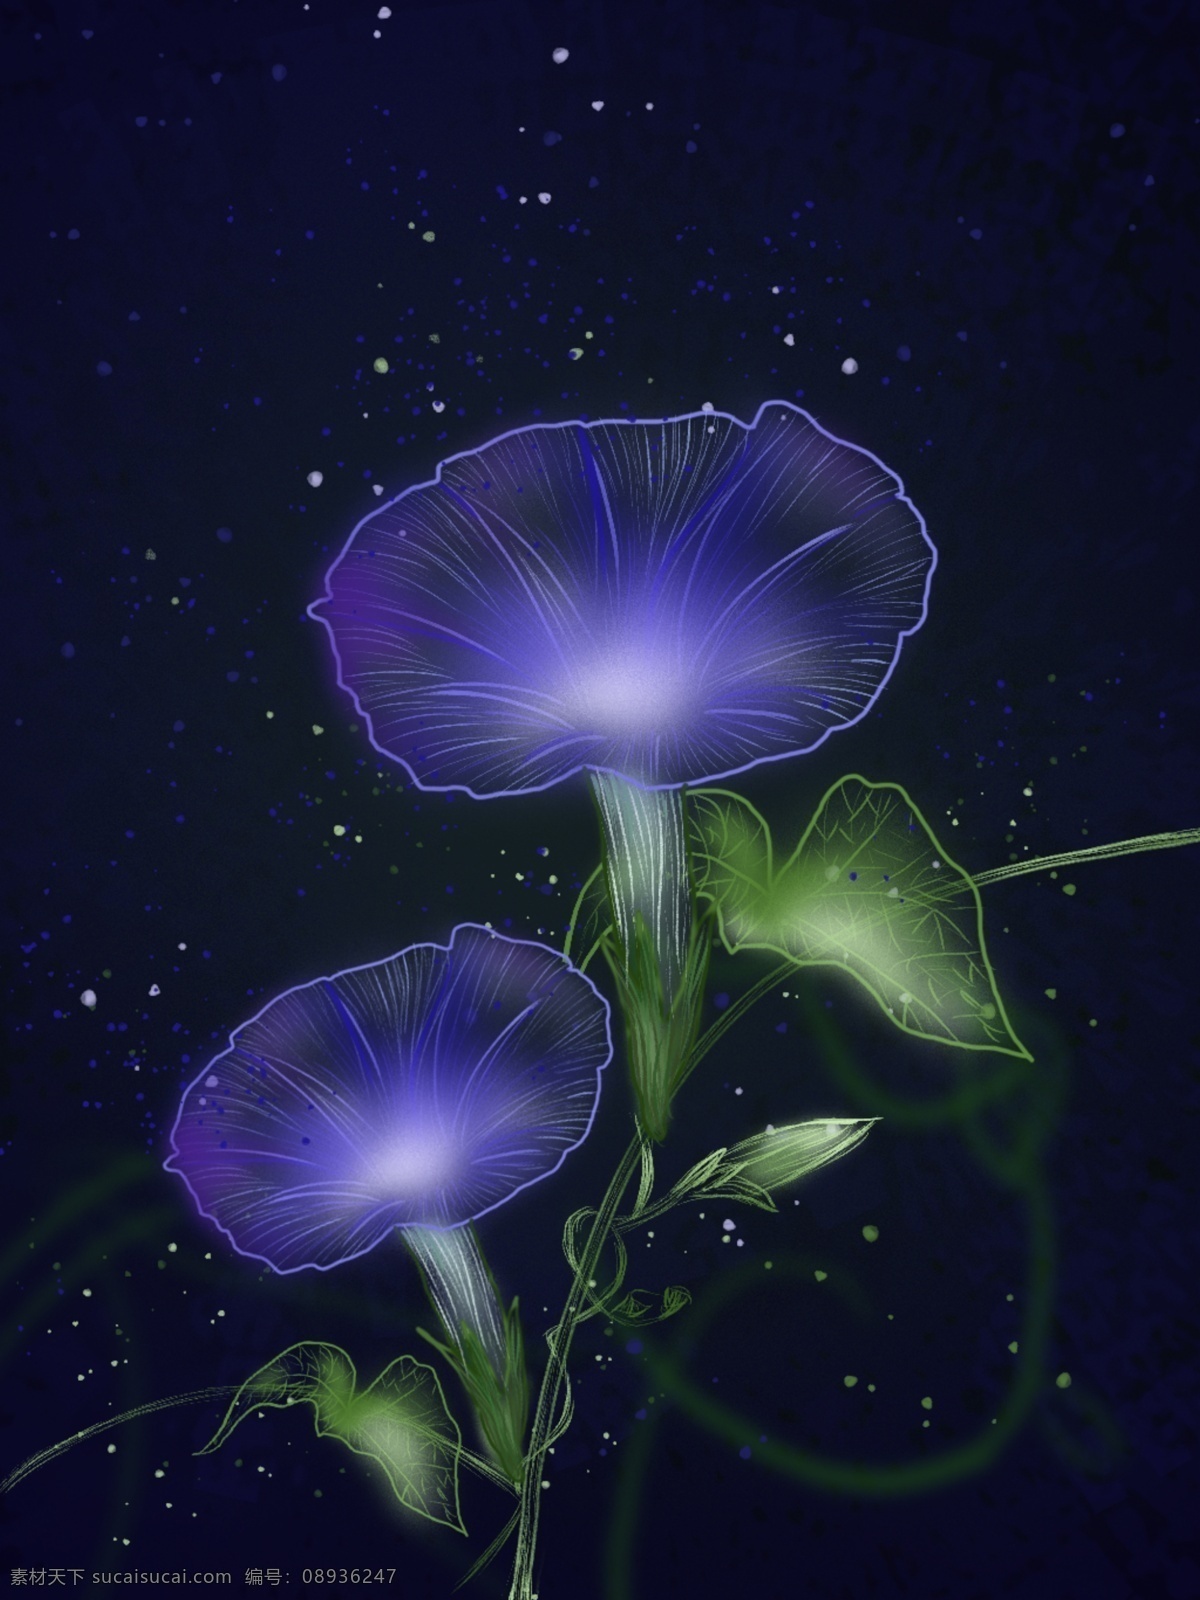 唯美 植物 独特 透明感 神秘 紫色 牵牛花 背景 独特透明感 叶子 绿色 神秘色彩 光点 海报背景